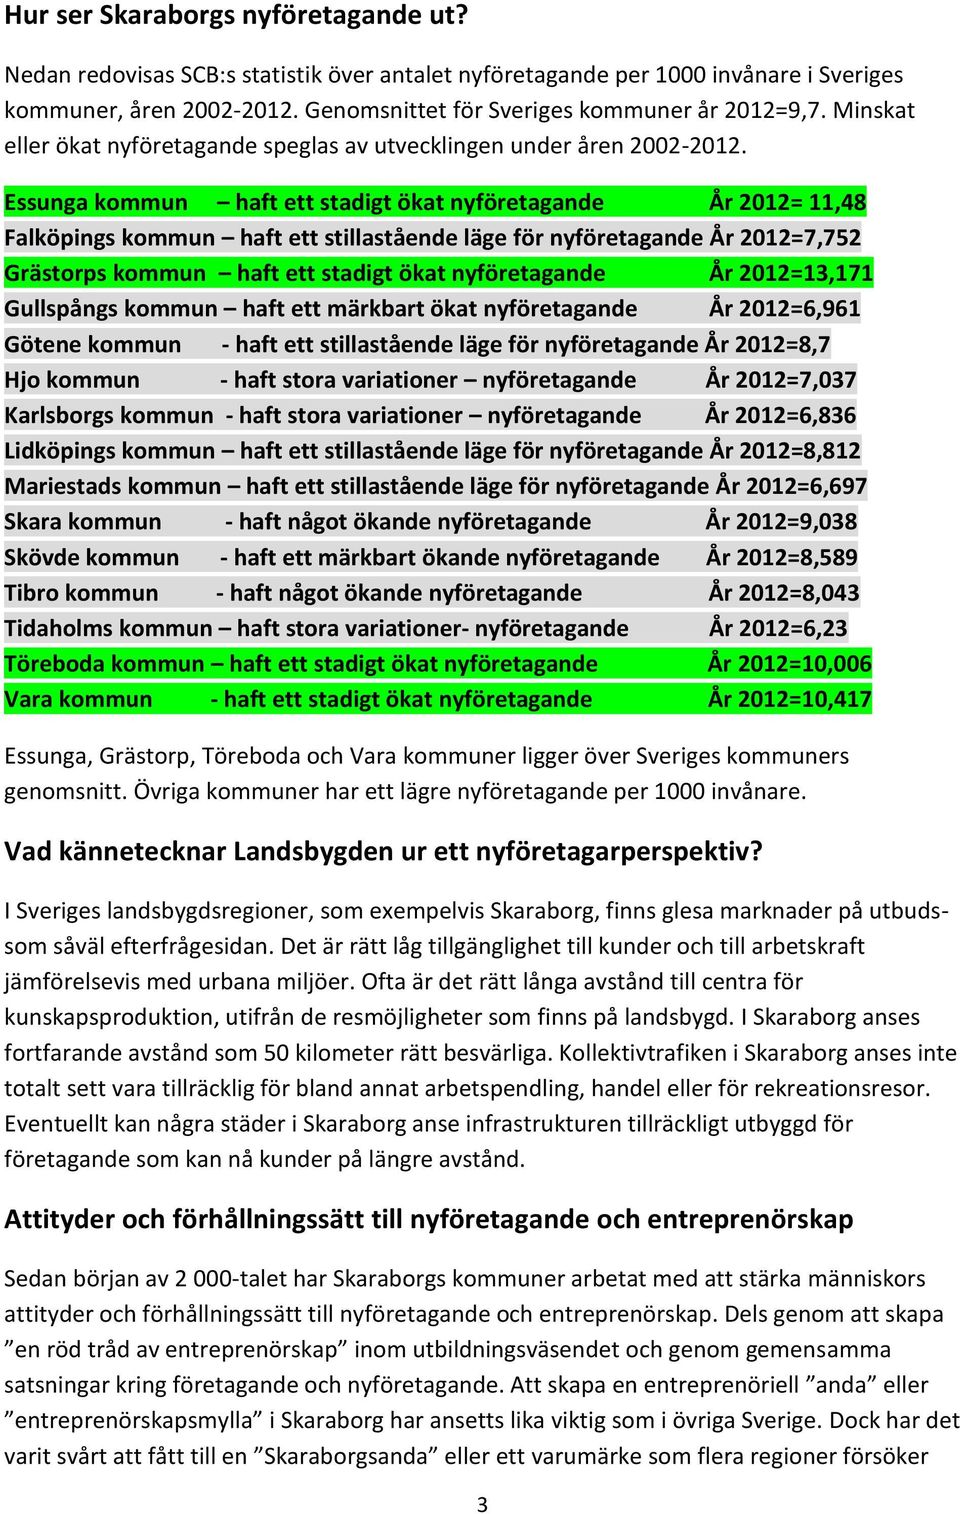 Essunga kommun haft ett stadigt ökat nyföretagande År 2012= 11,48 Falköpings kommun haft ett stillastående läge för nyföretagande År 2012=7,752 Grästorps kommun haft ett stadigt ökat nyföretagande År